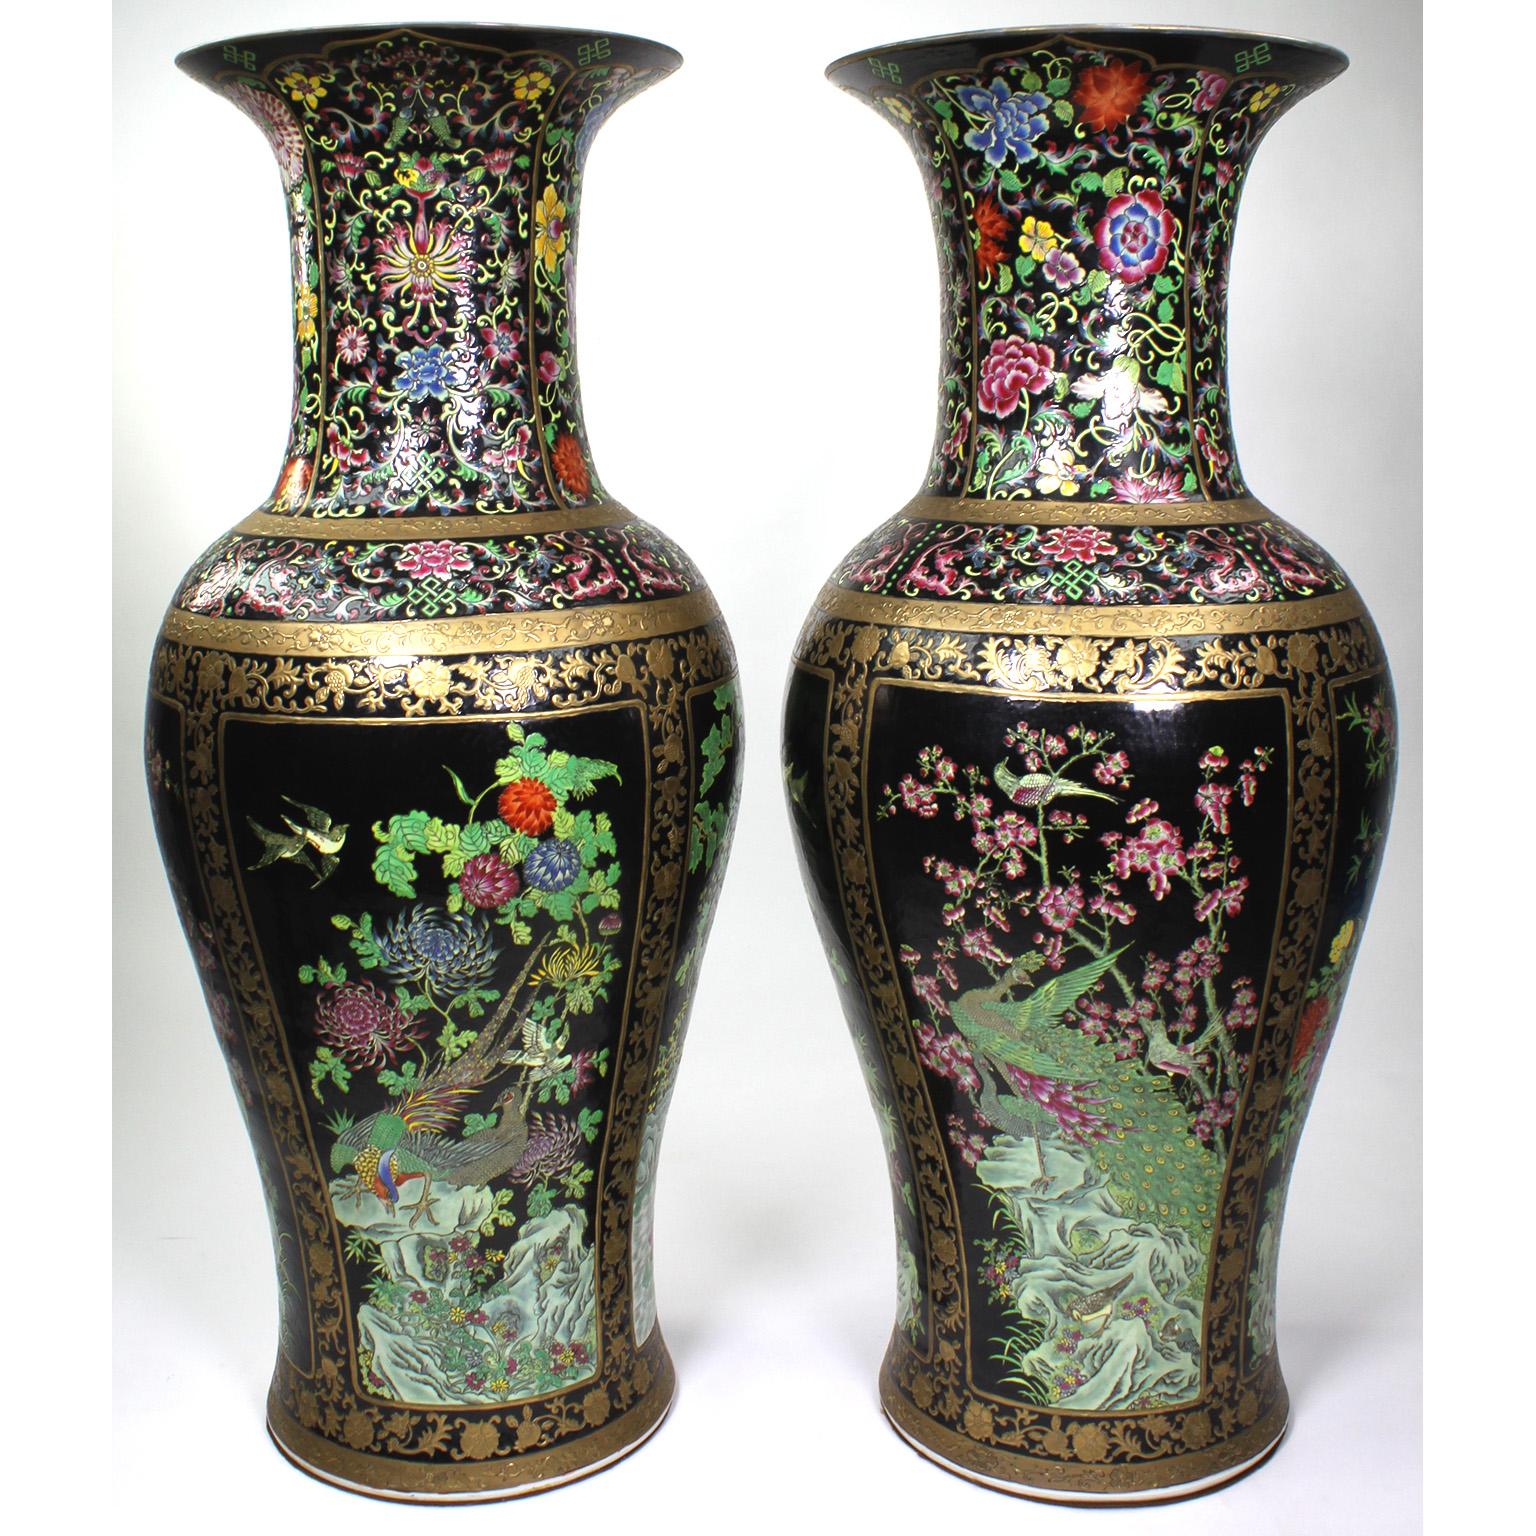 Paire de grands vases figuratifs en porcelaine d'exportation chinoise. Les corps ovoïdes en porcelaine sont décorés de fleurs colorées, d'oiseaux tropicaux, d'arbres, de lys et d'un étang, avec une bordure dorée et un fond noir. Non signé - non